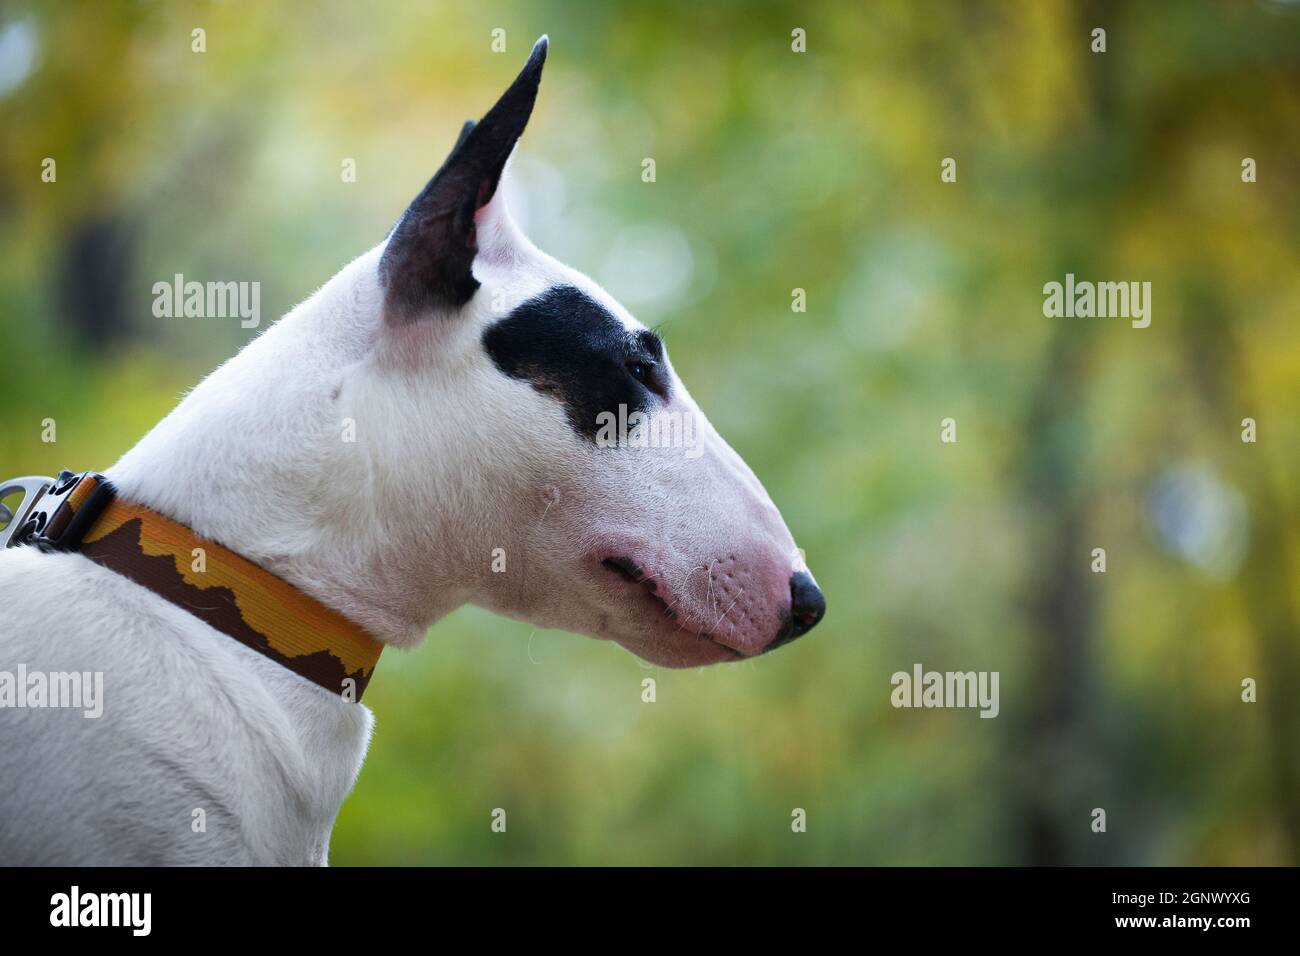 Portrait D Un Chien De Race Bull Terrier Blanc Avec Un Point Noir Pres De L œil Photo Stock Alamy